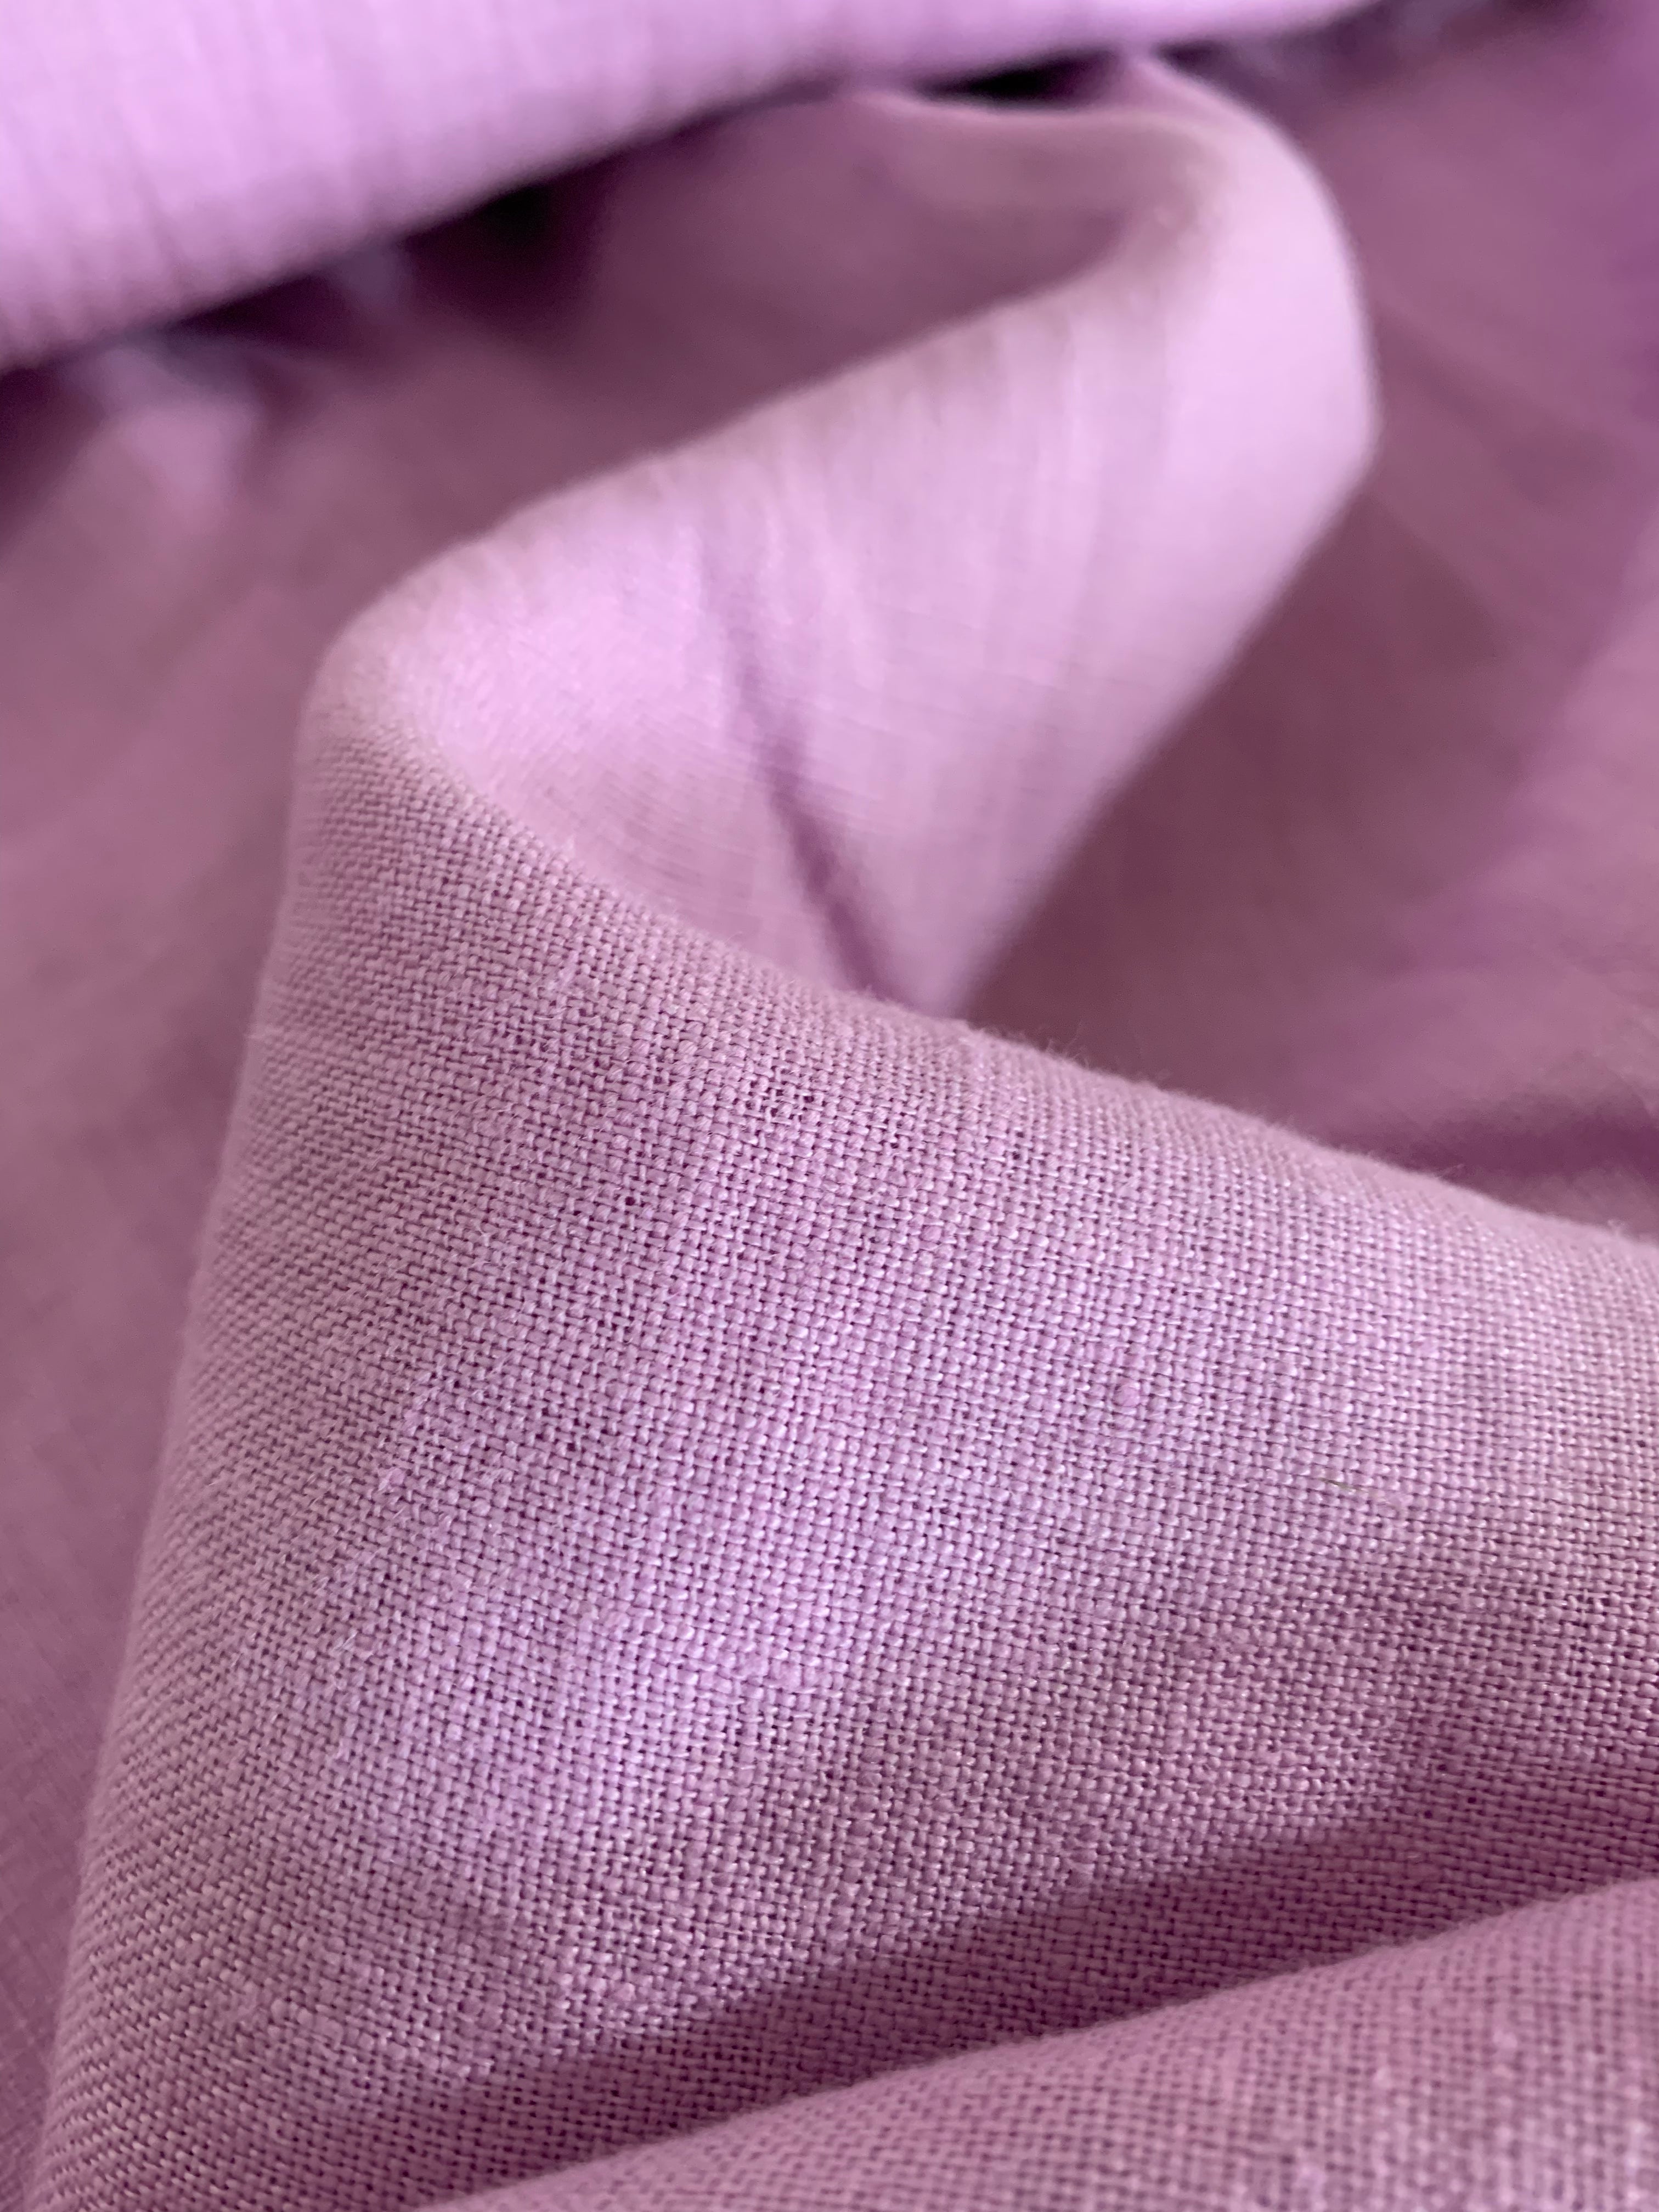 Lavendel: extra breites washed Leinen in frischem Lavendelton